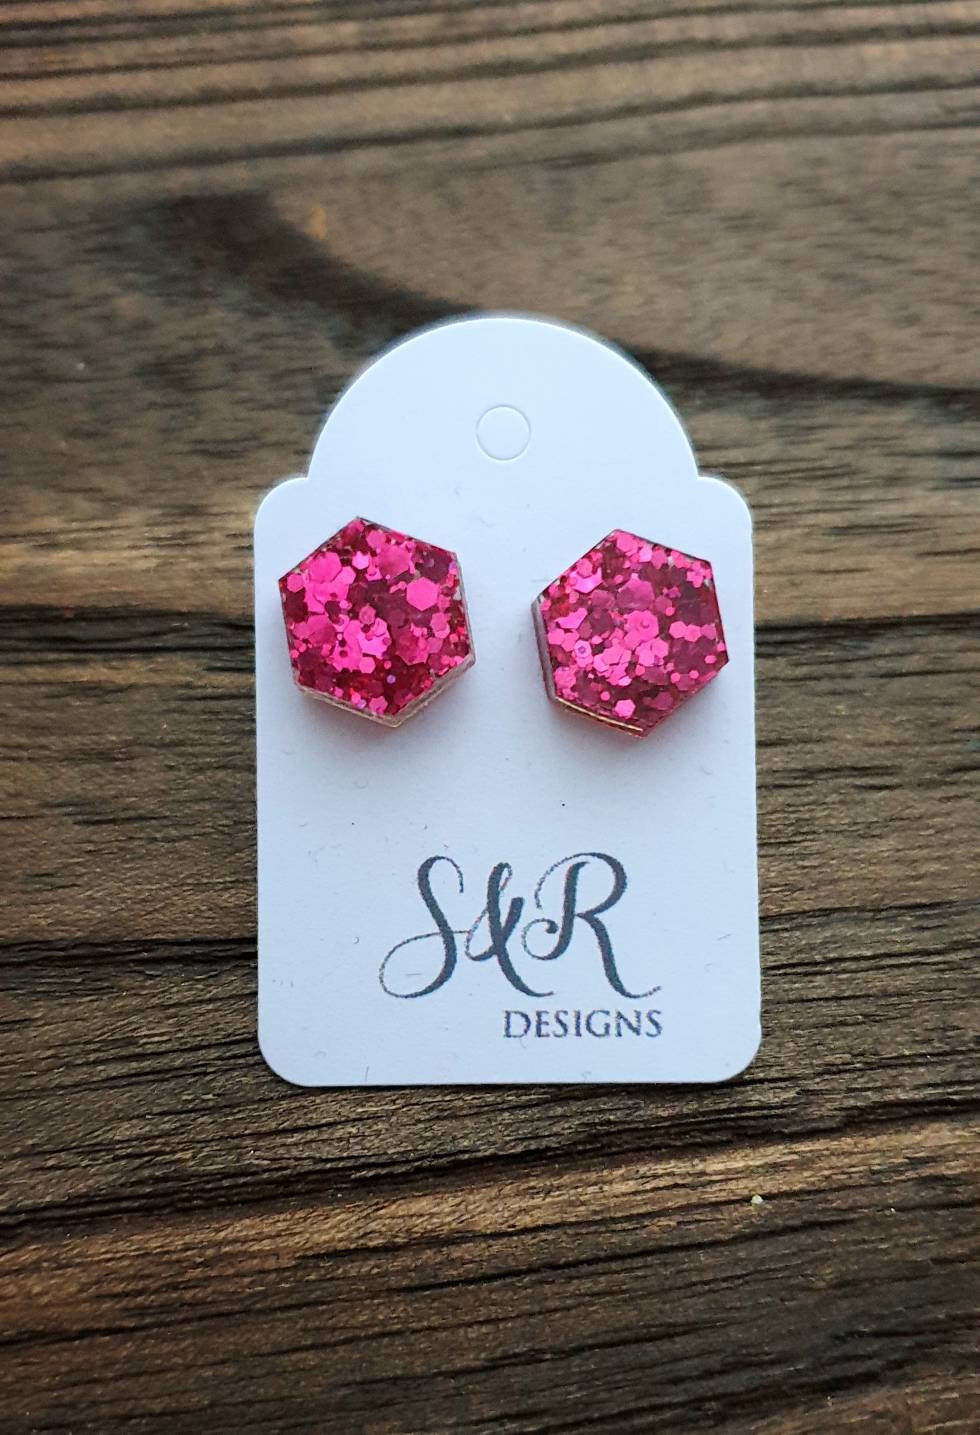 Hexagon Resin Stud Earrings, Hot Pink Glitter Earrings. Stainless Steel Stud Earrings. 10mm or 6mm